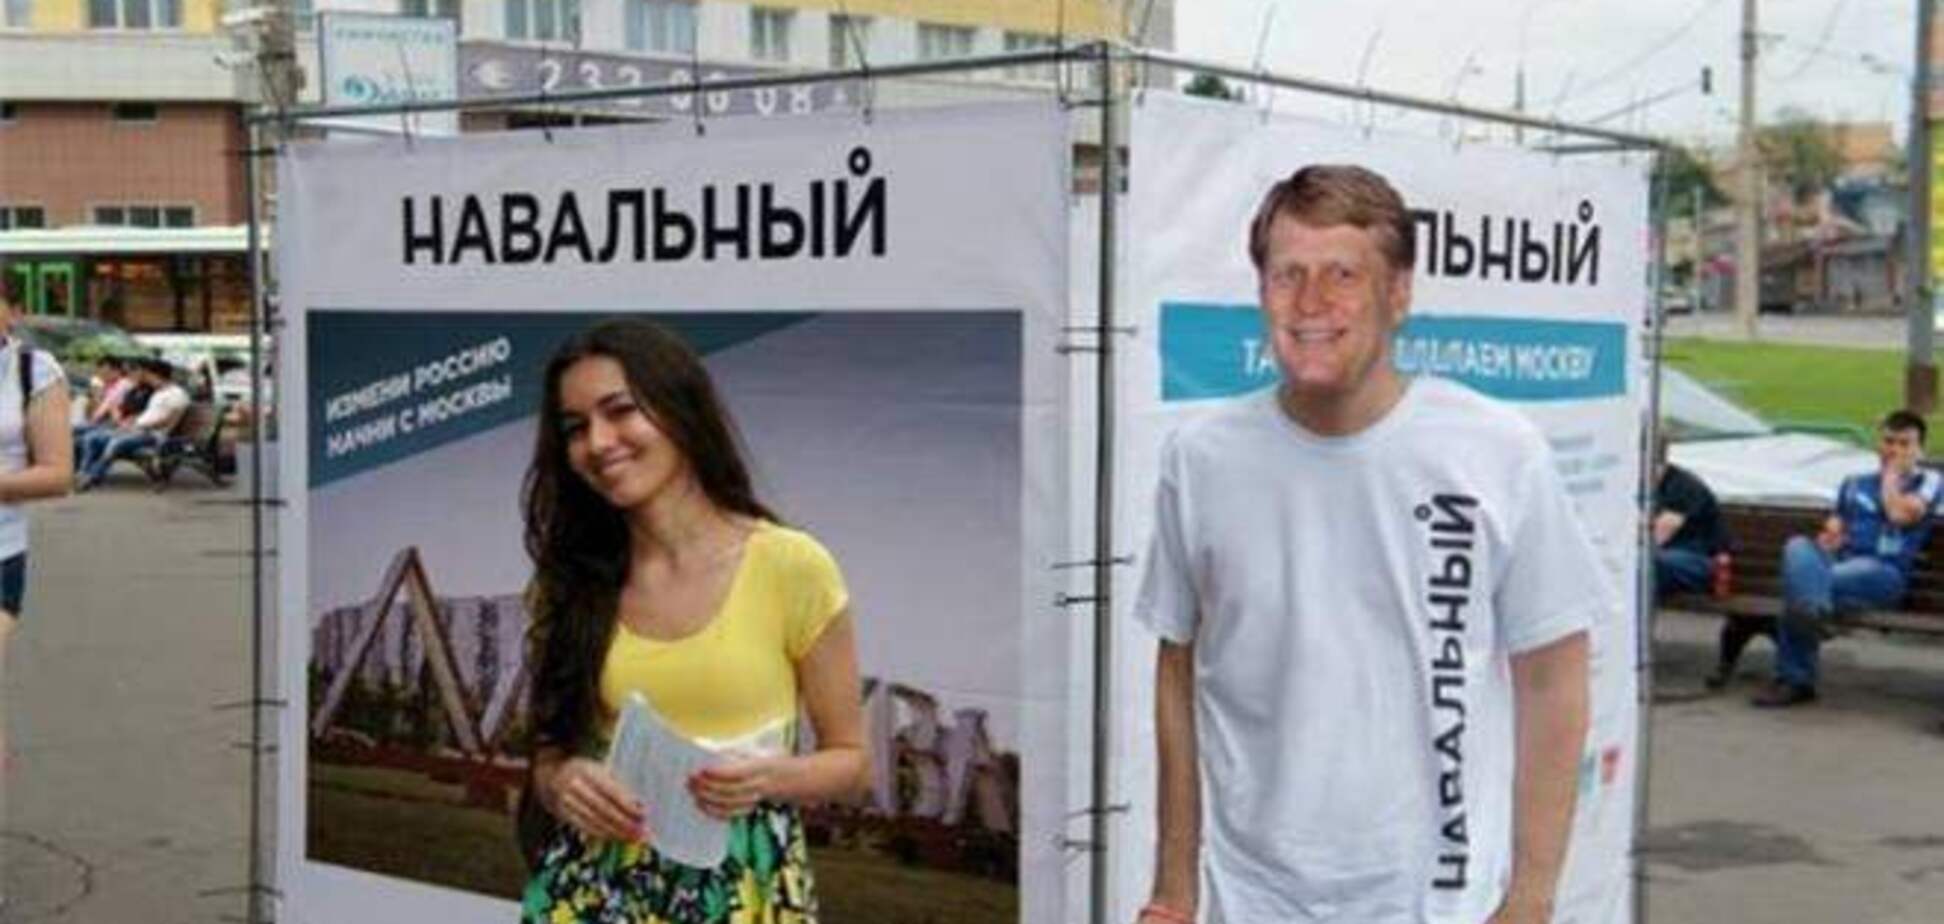 В Сети появилось 'фото', на котором посол США в РФ агитирует за Навального